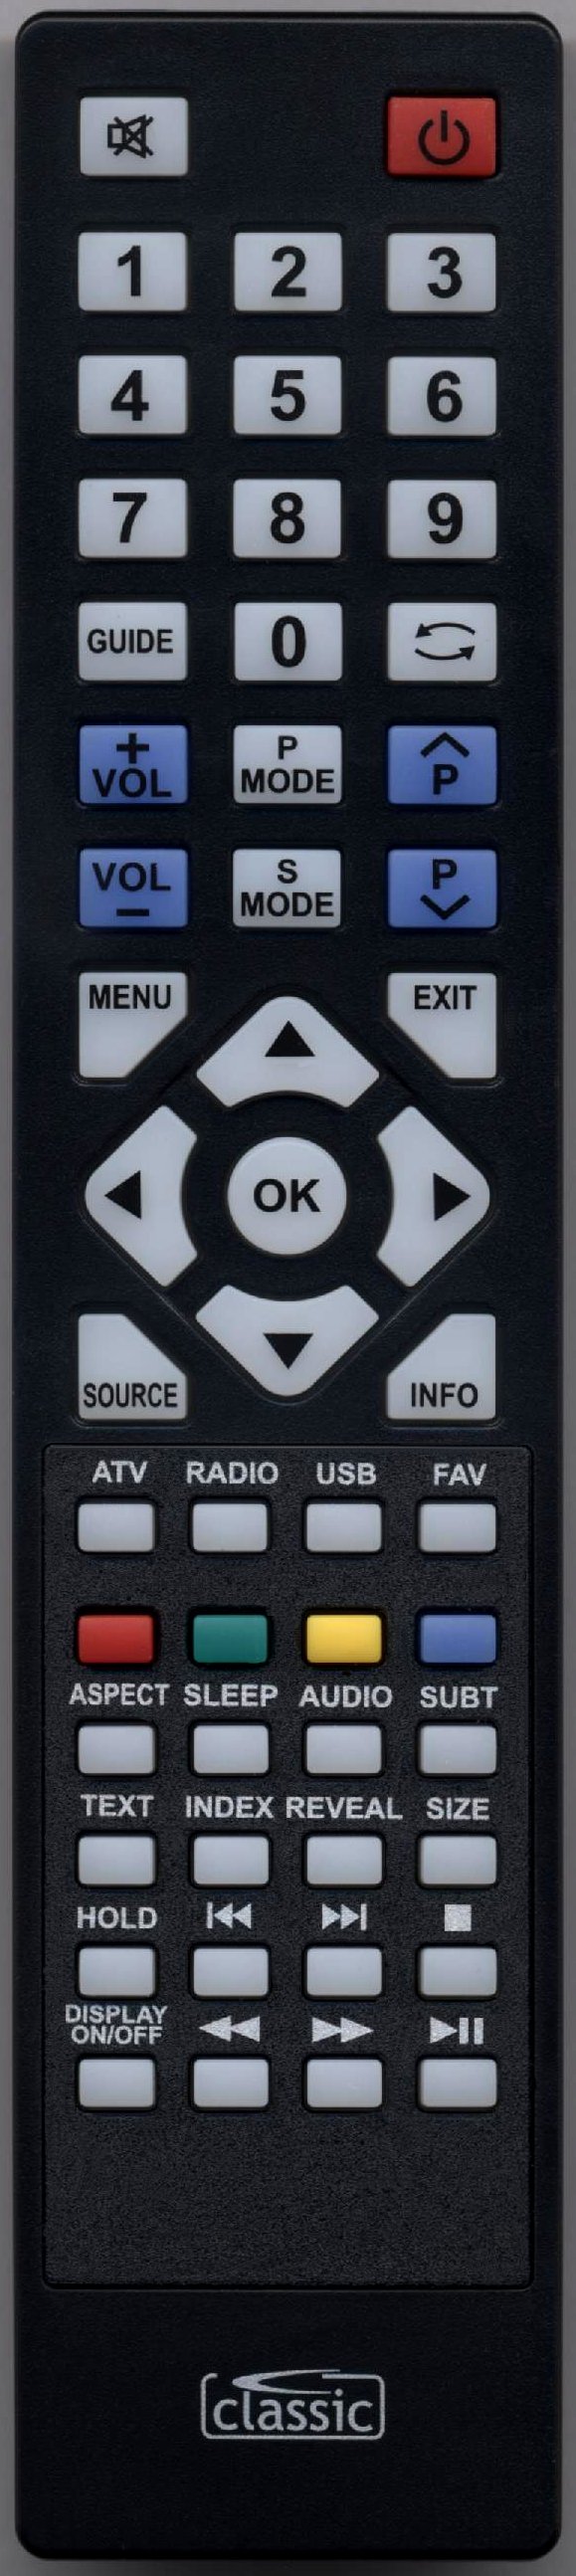 Emotion X18569 Remote Control